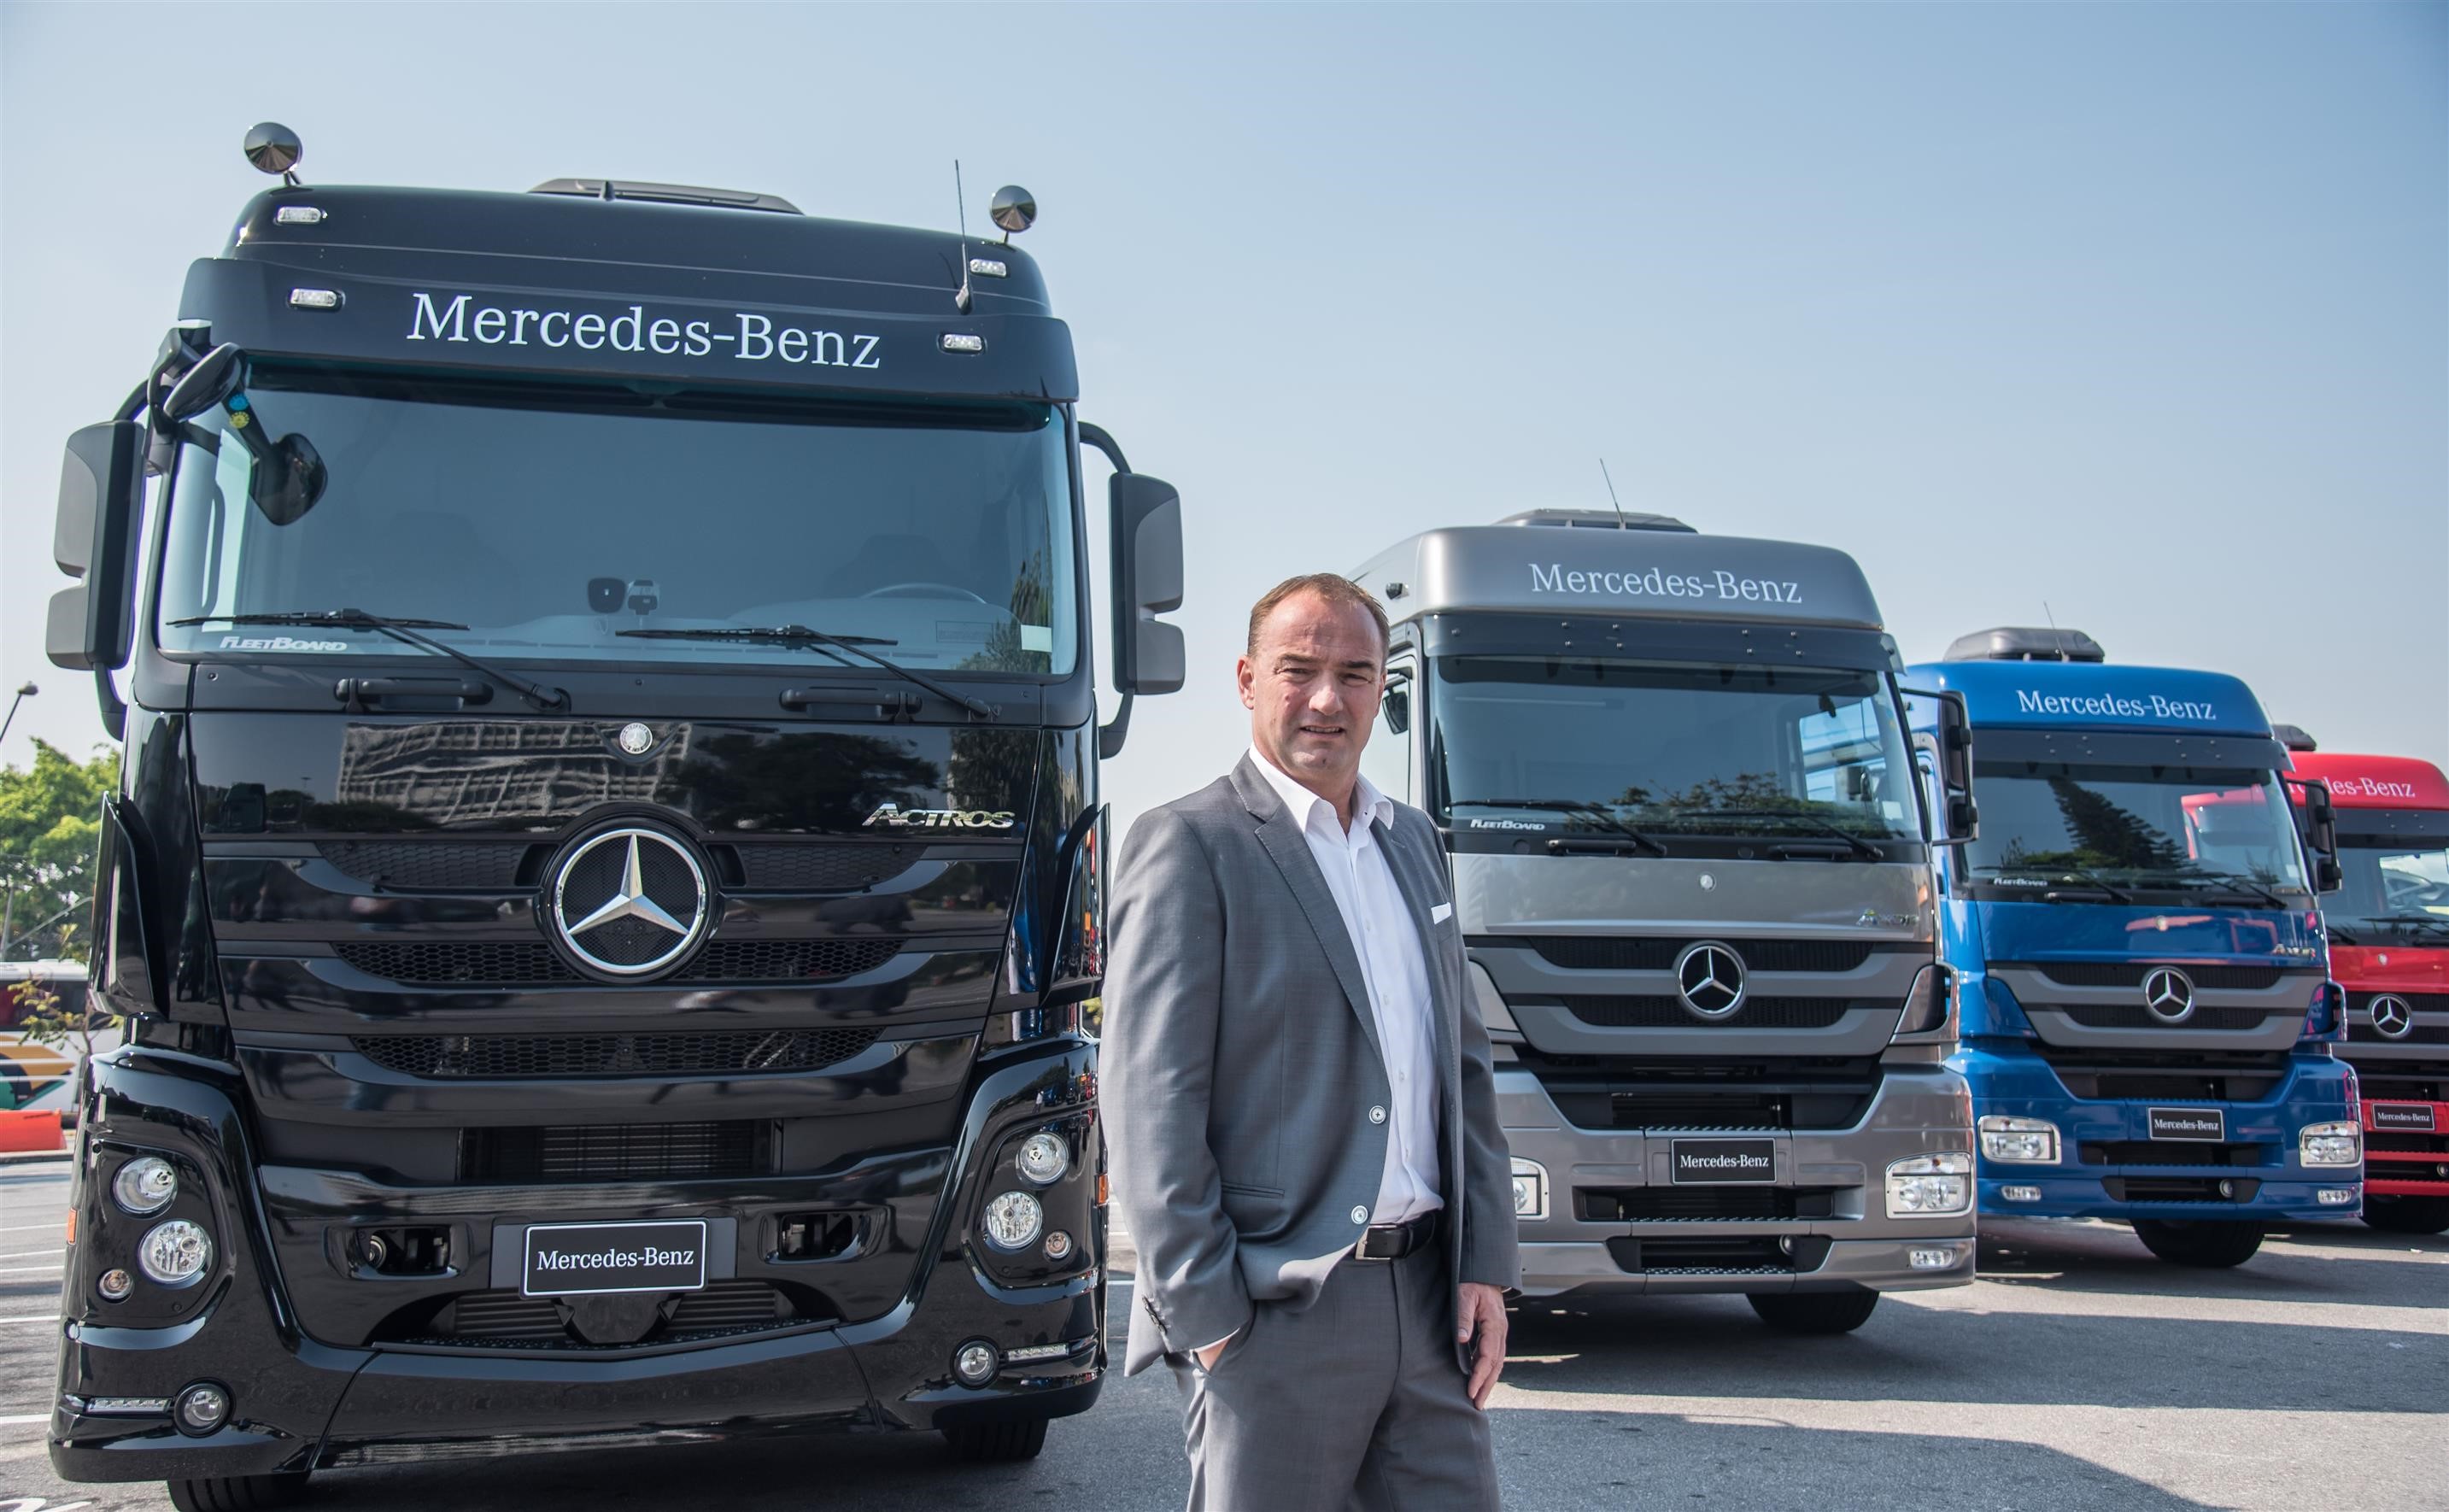 Caminhões: Mercedes-Benz projeta alta de 30% em 2018.